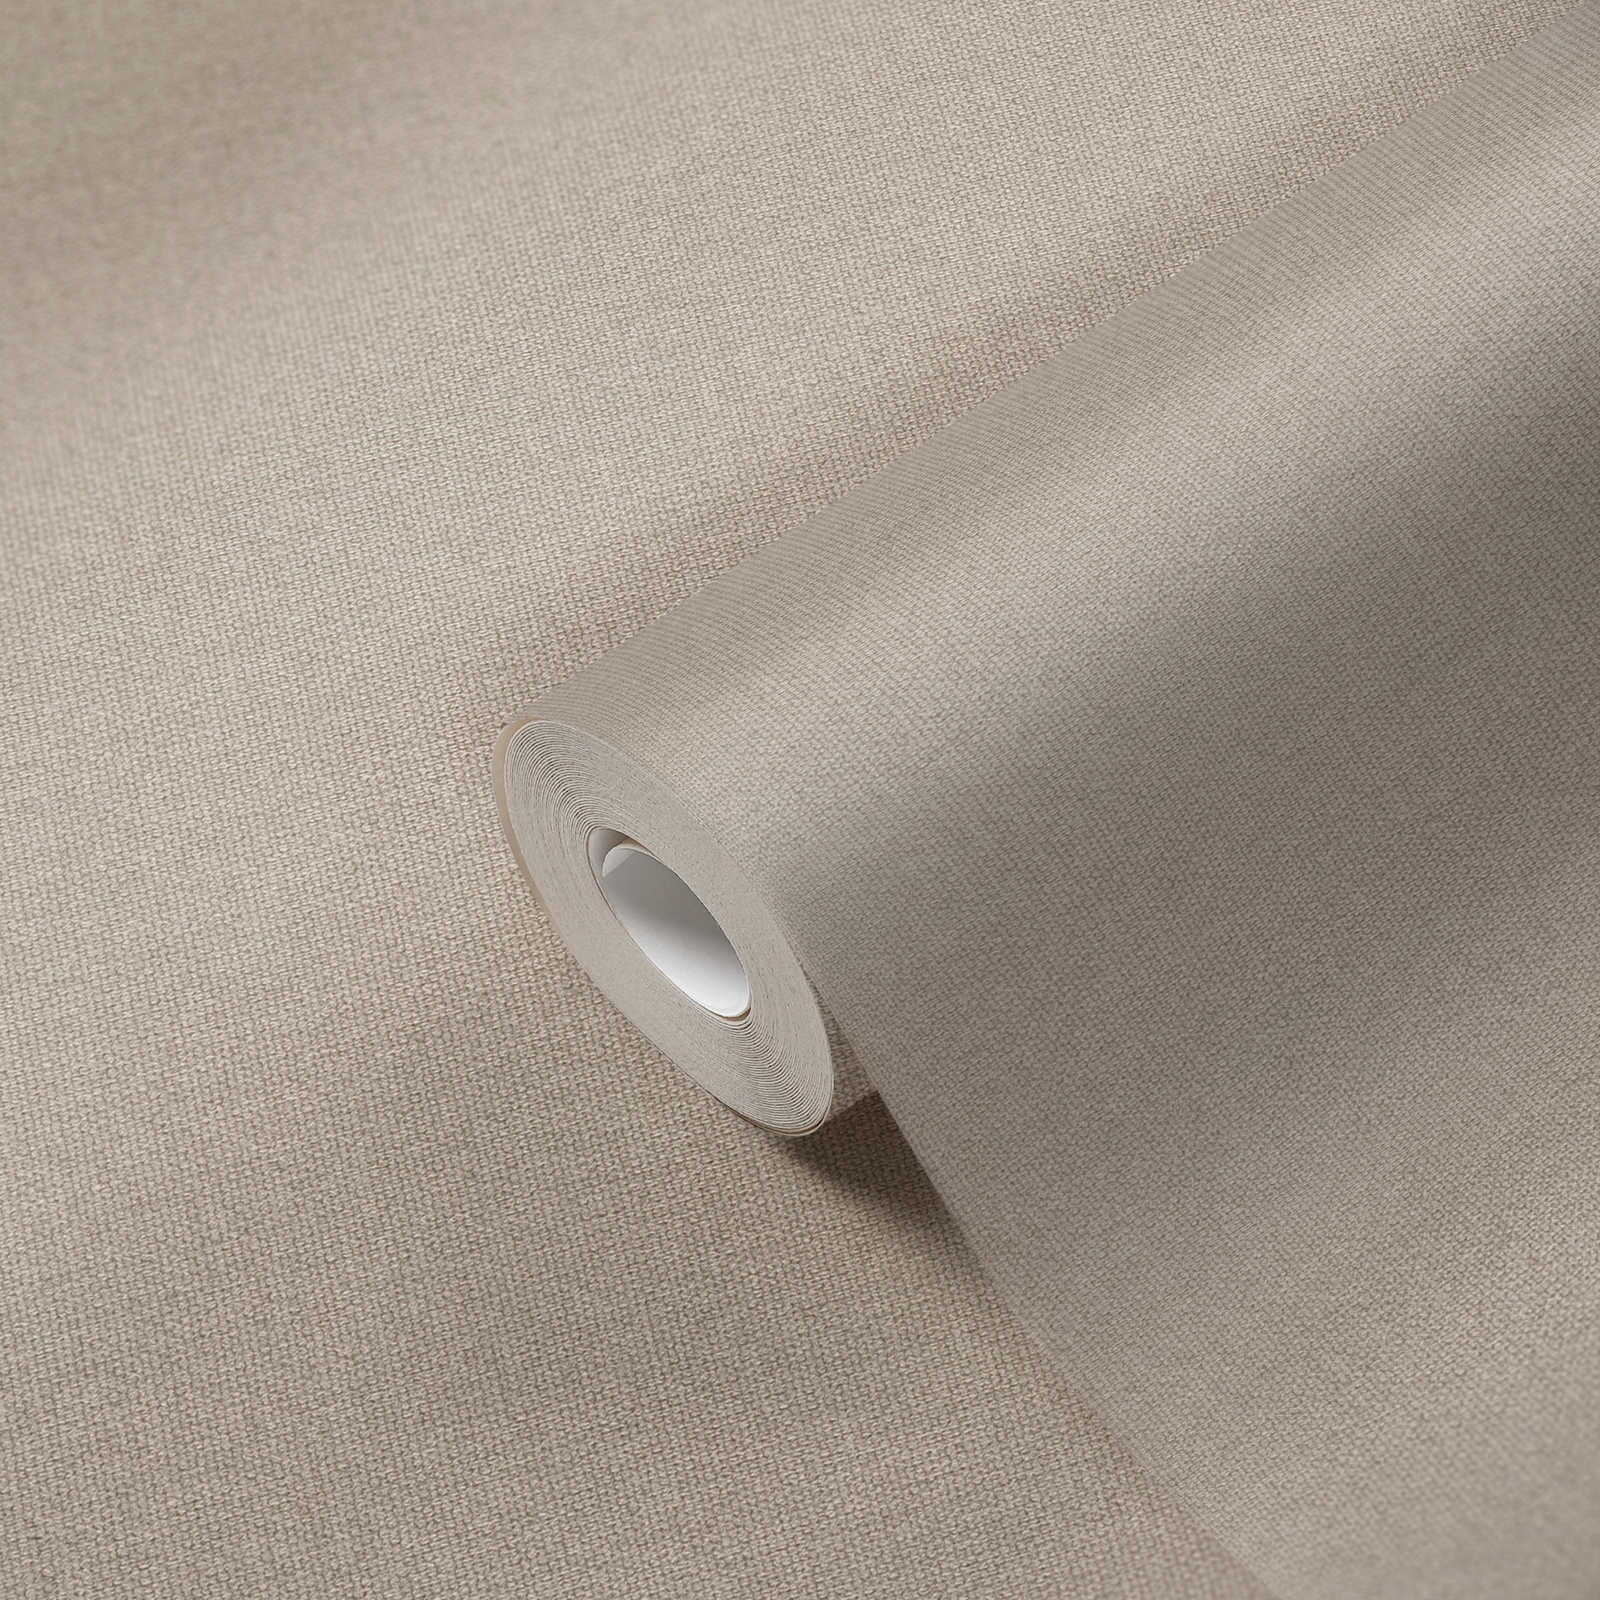             Papier peint à l'aspect lin avec surface structurée, uni - beige, gris
        